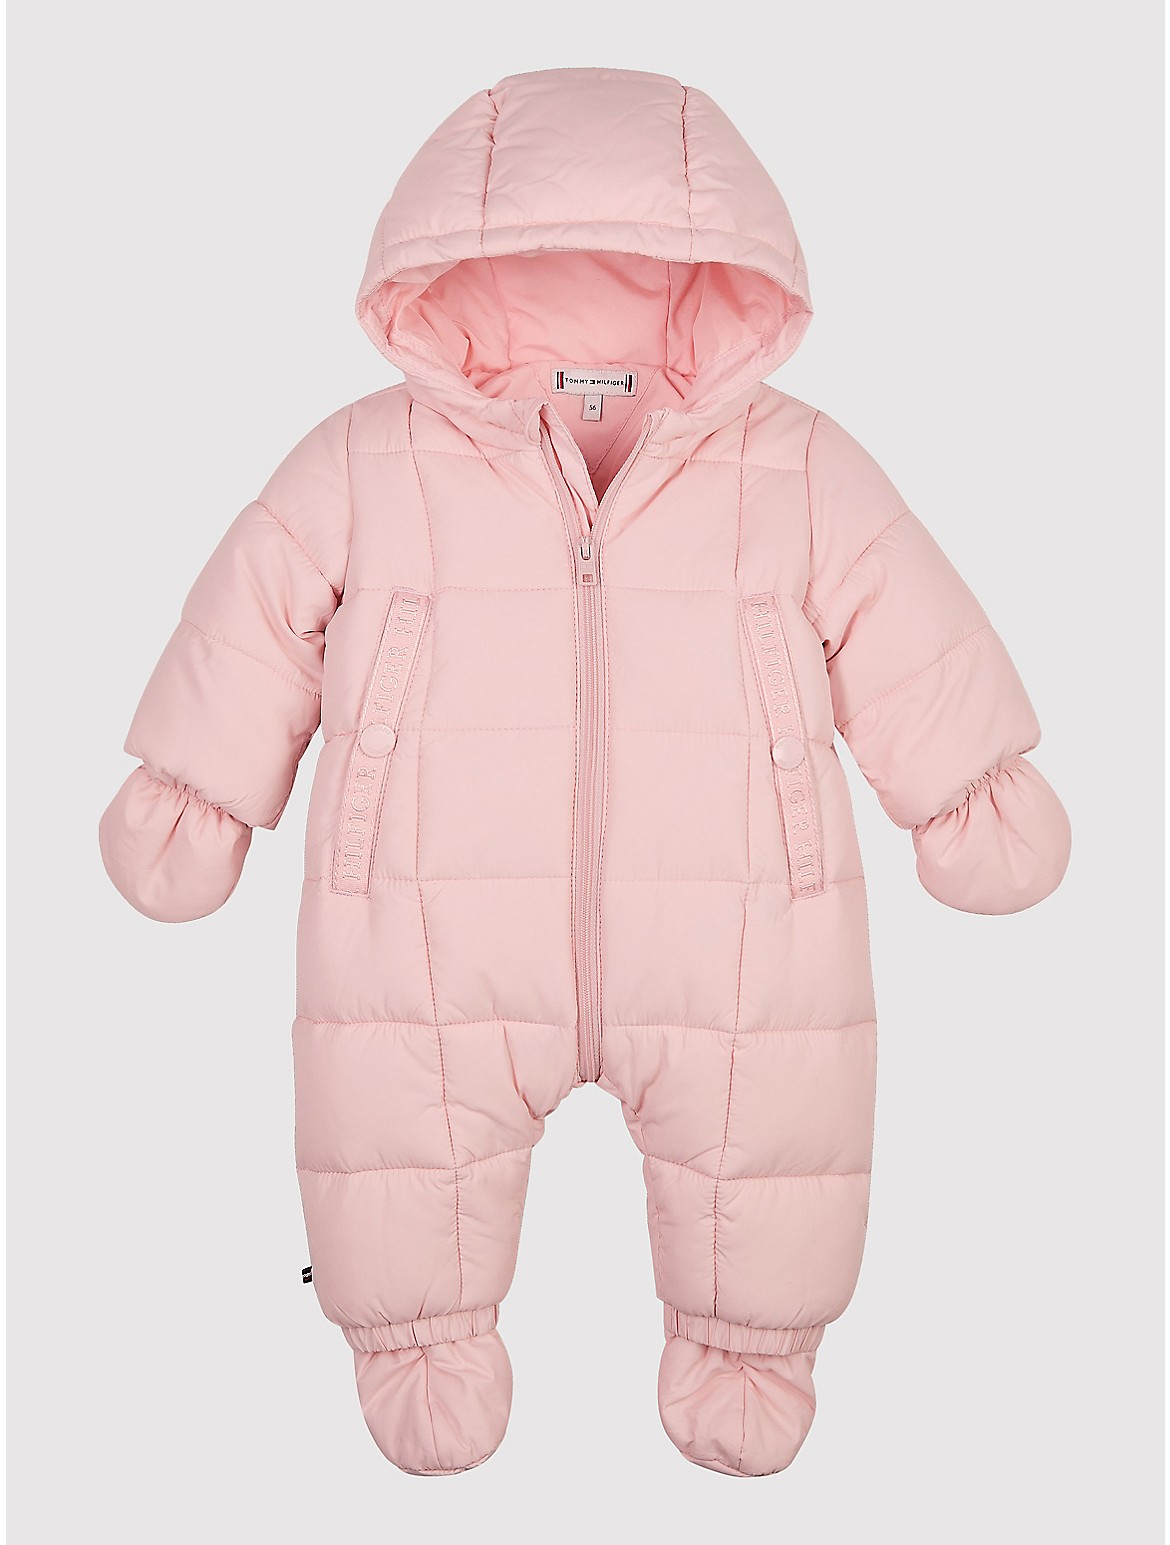 Tommy Hilfiger Babies' Ski Suit Set - Pink - 6-9M